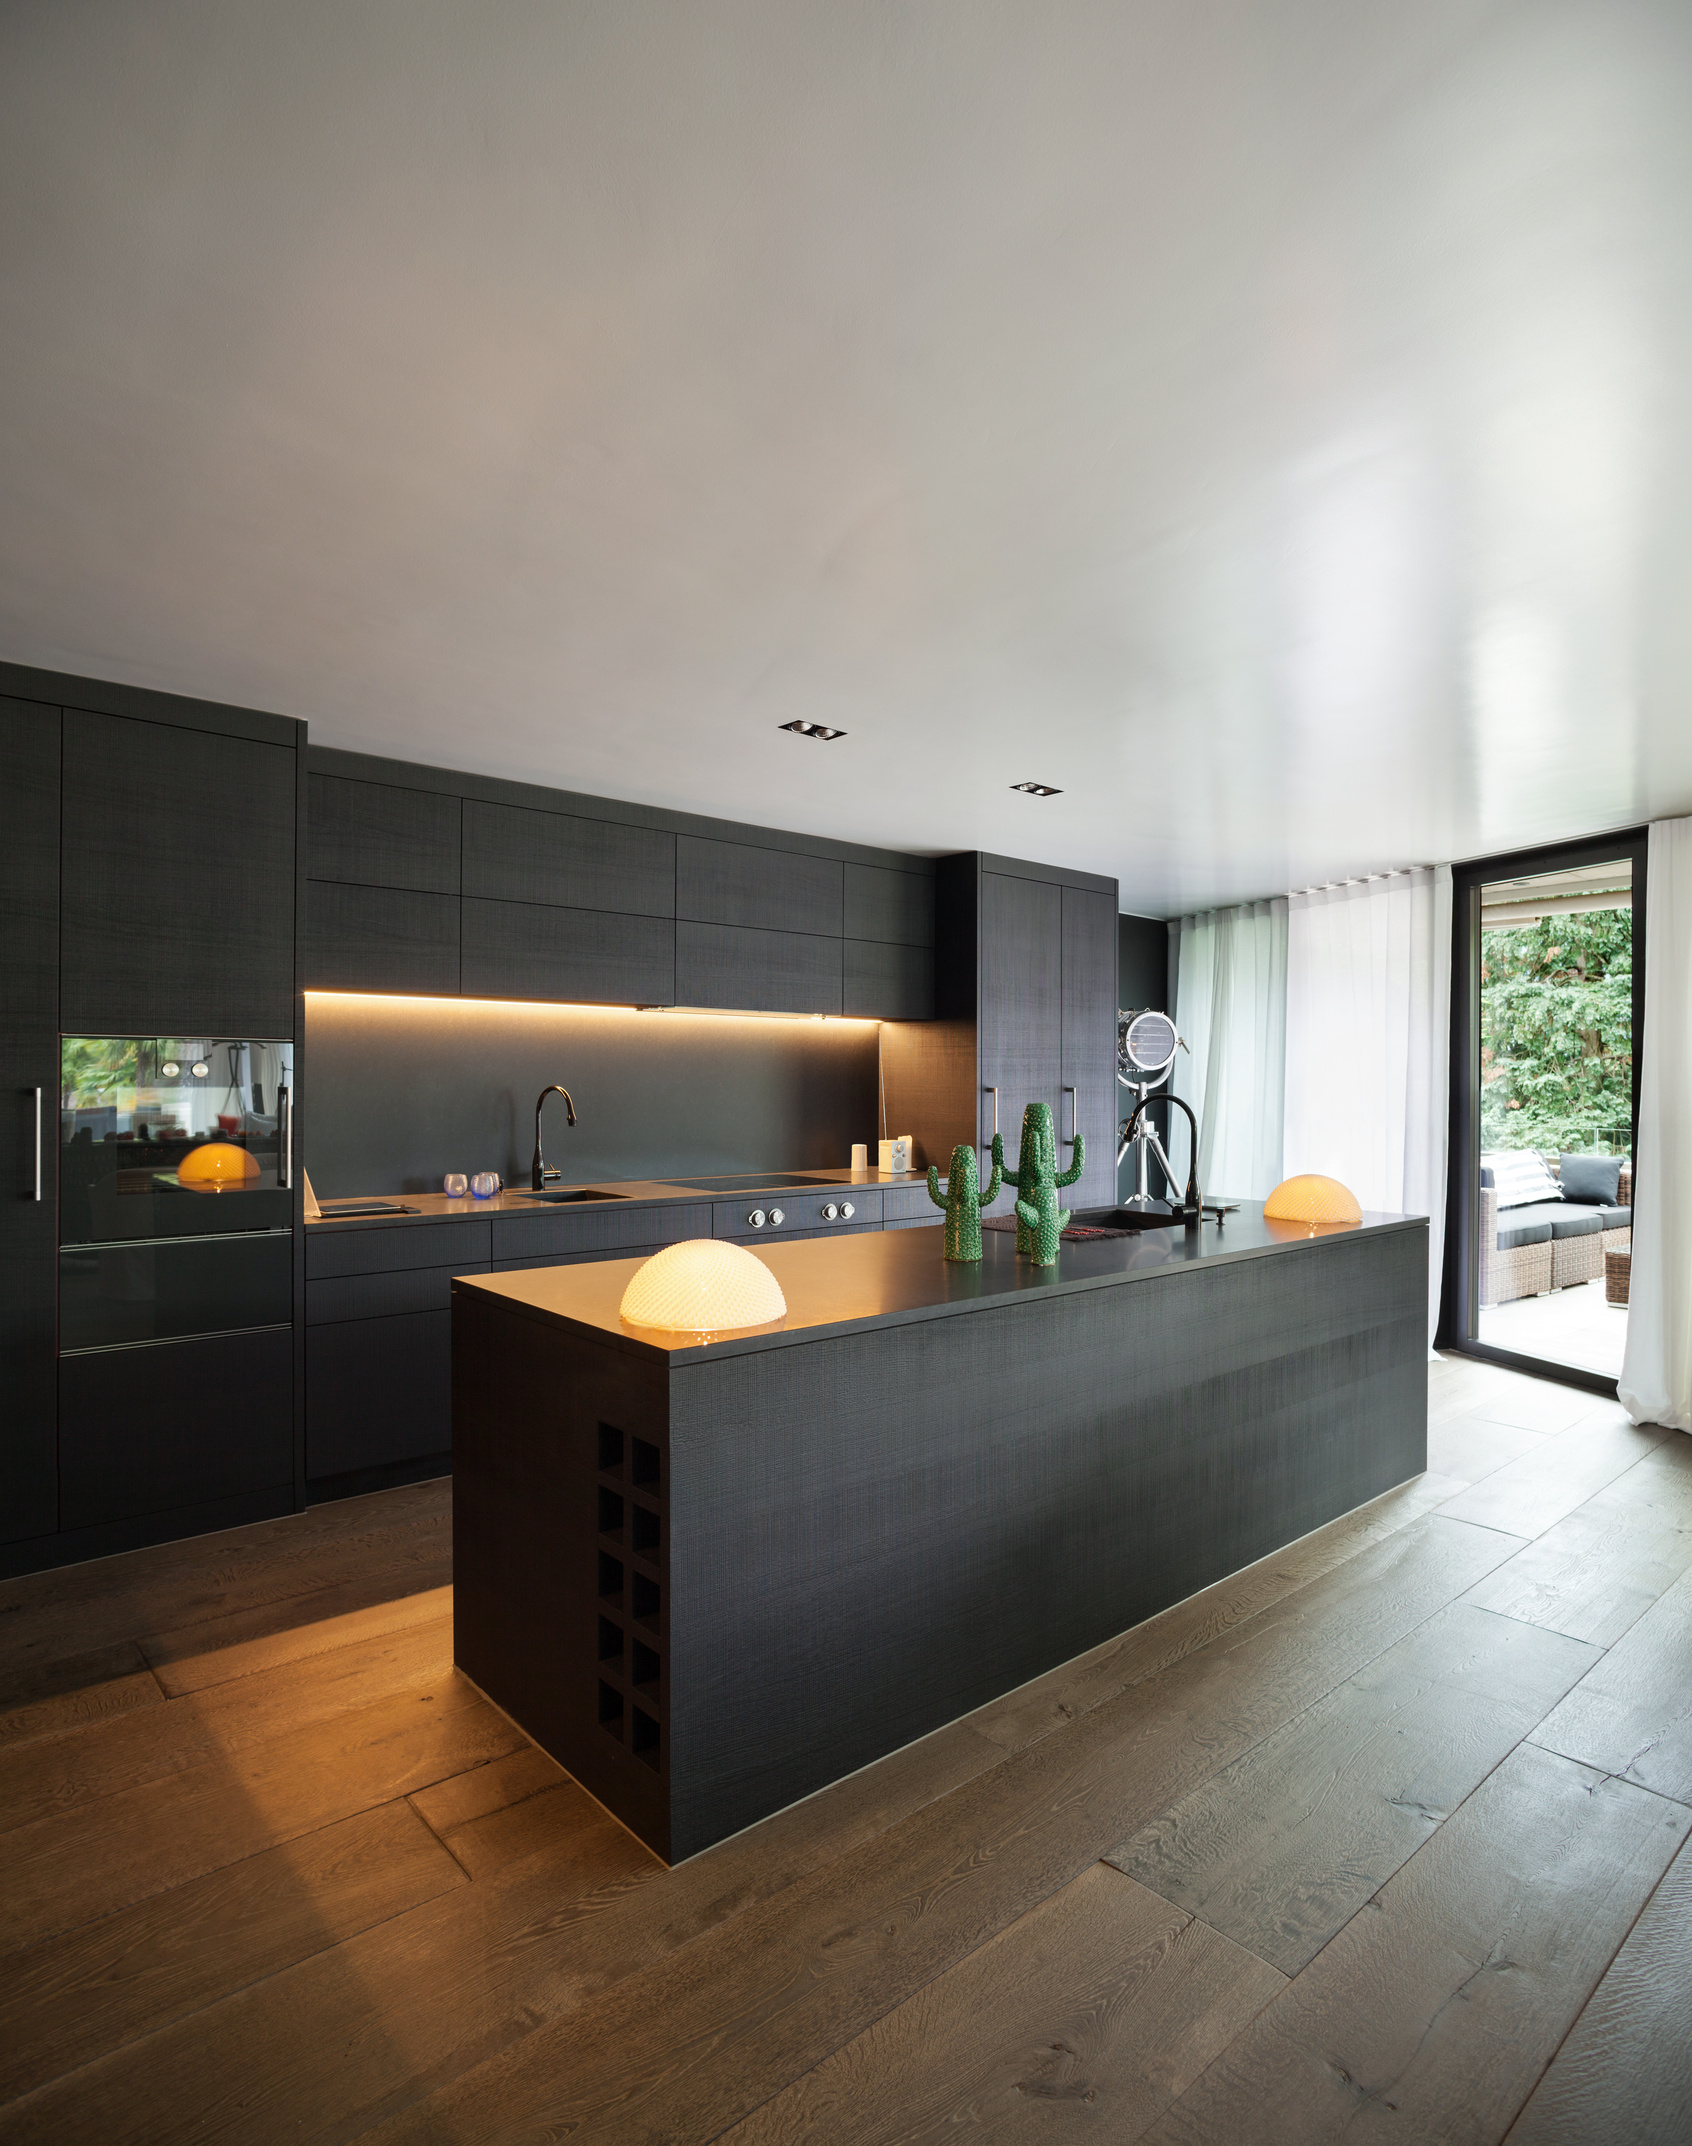 Interior, Modern kitchen